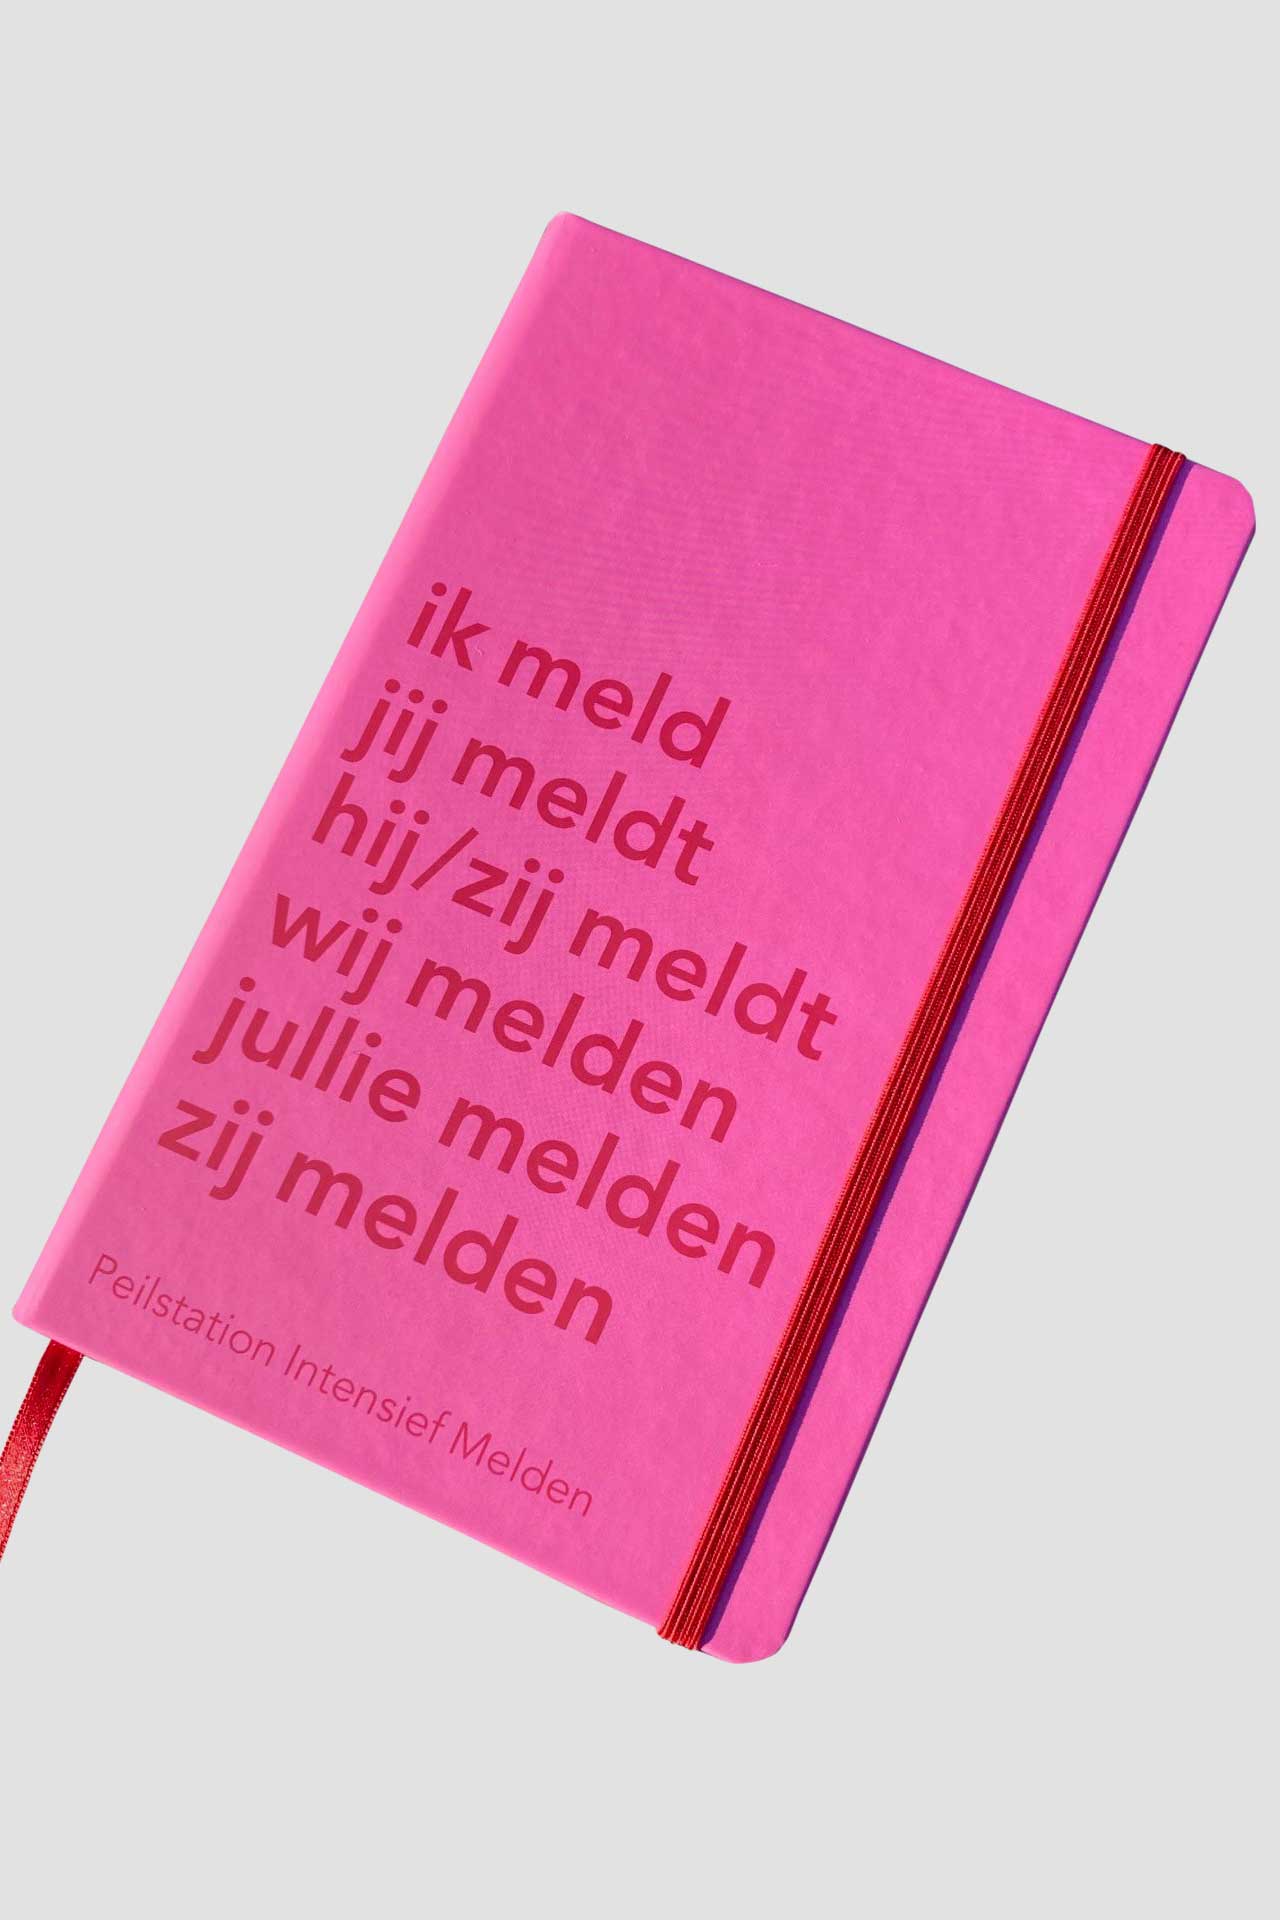 Mix&Match, type CMYK roze rood notitieboek met een tekst in blinddruk.